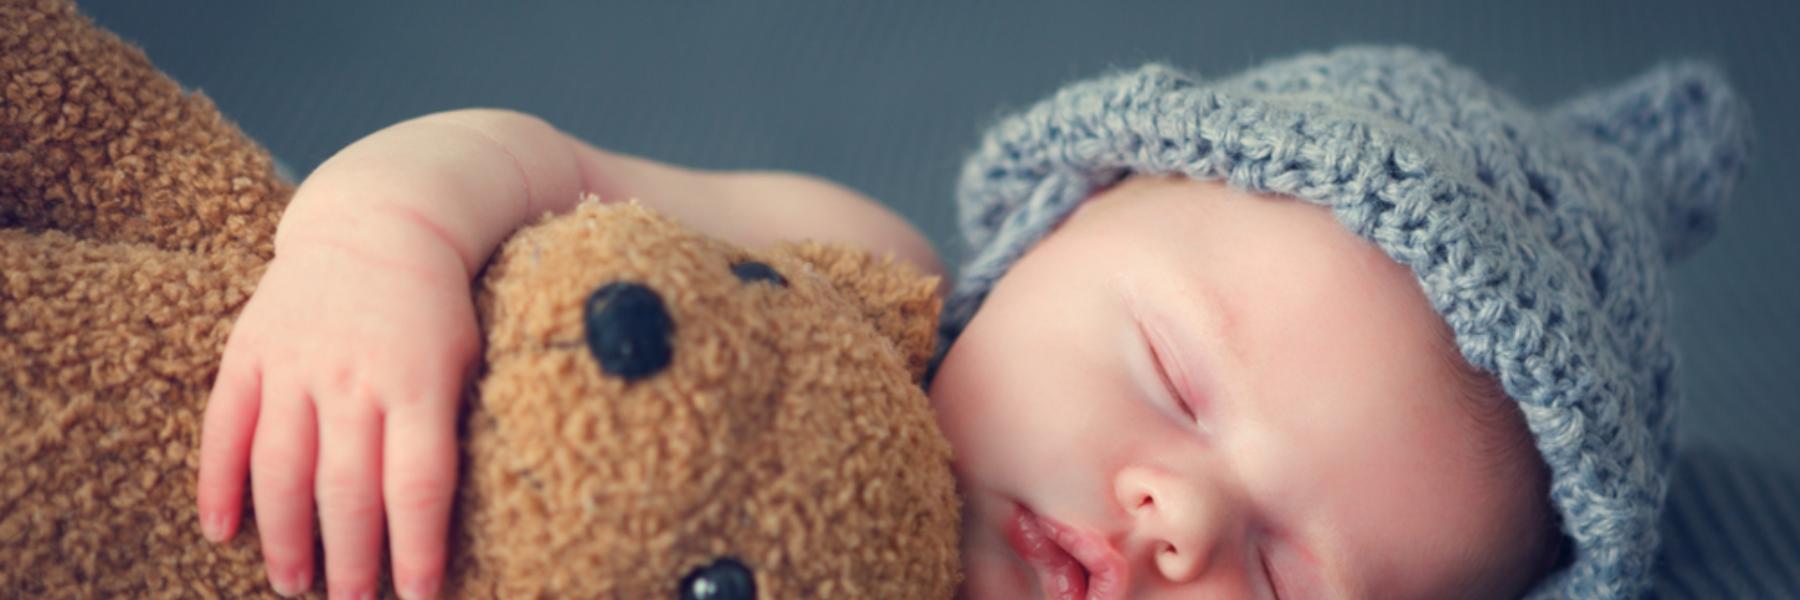 يعاني رضيع واحد من بين كل 5 رضع من صعوبات في النوم في أول عام من ميلاده